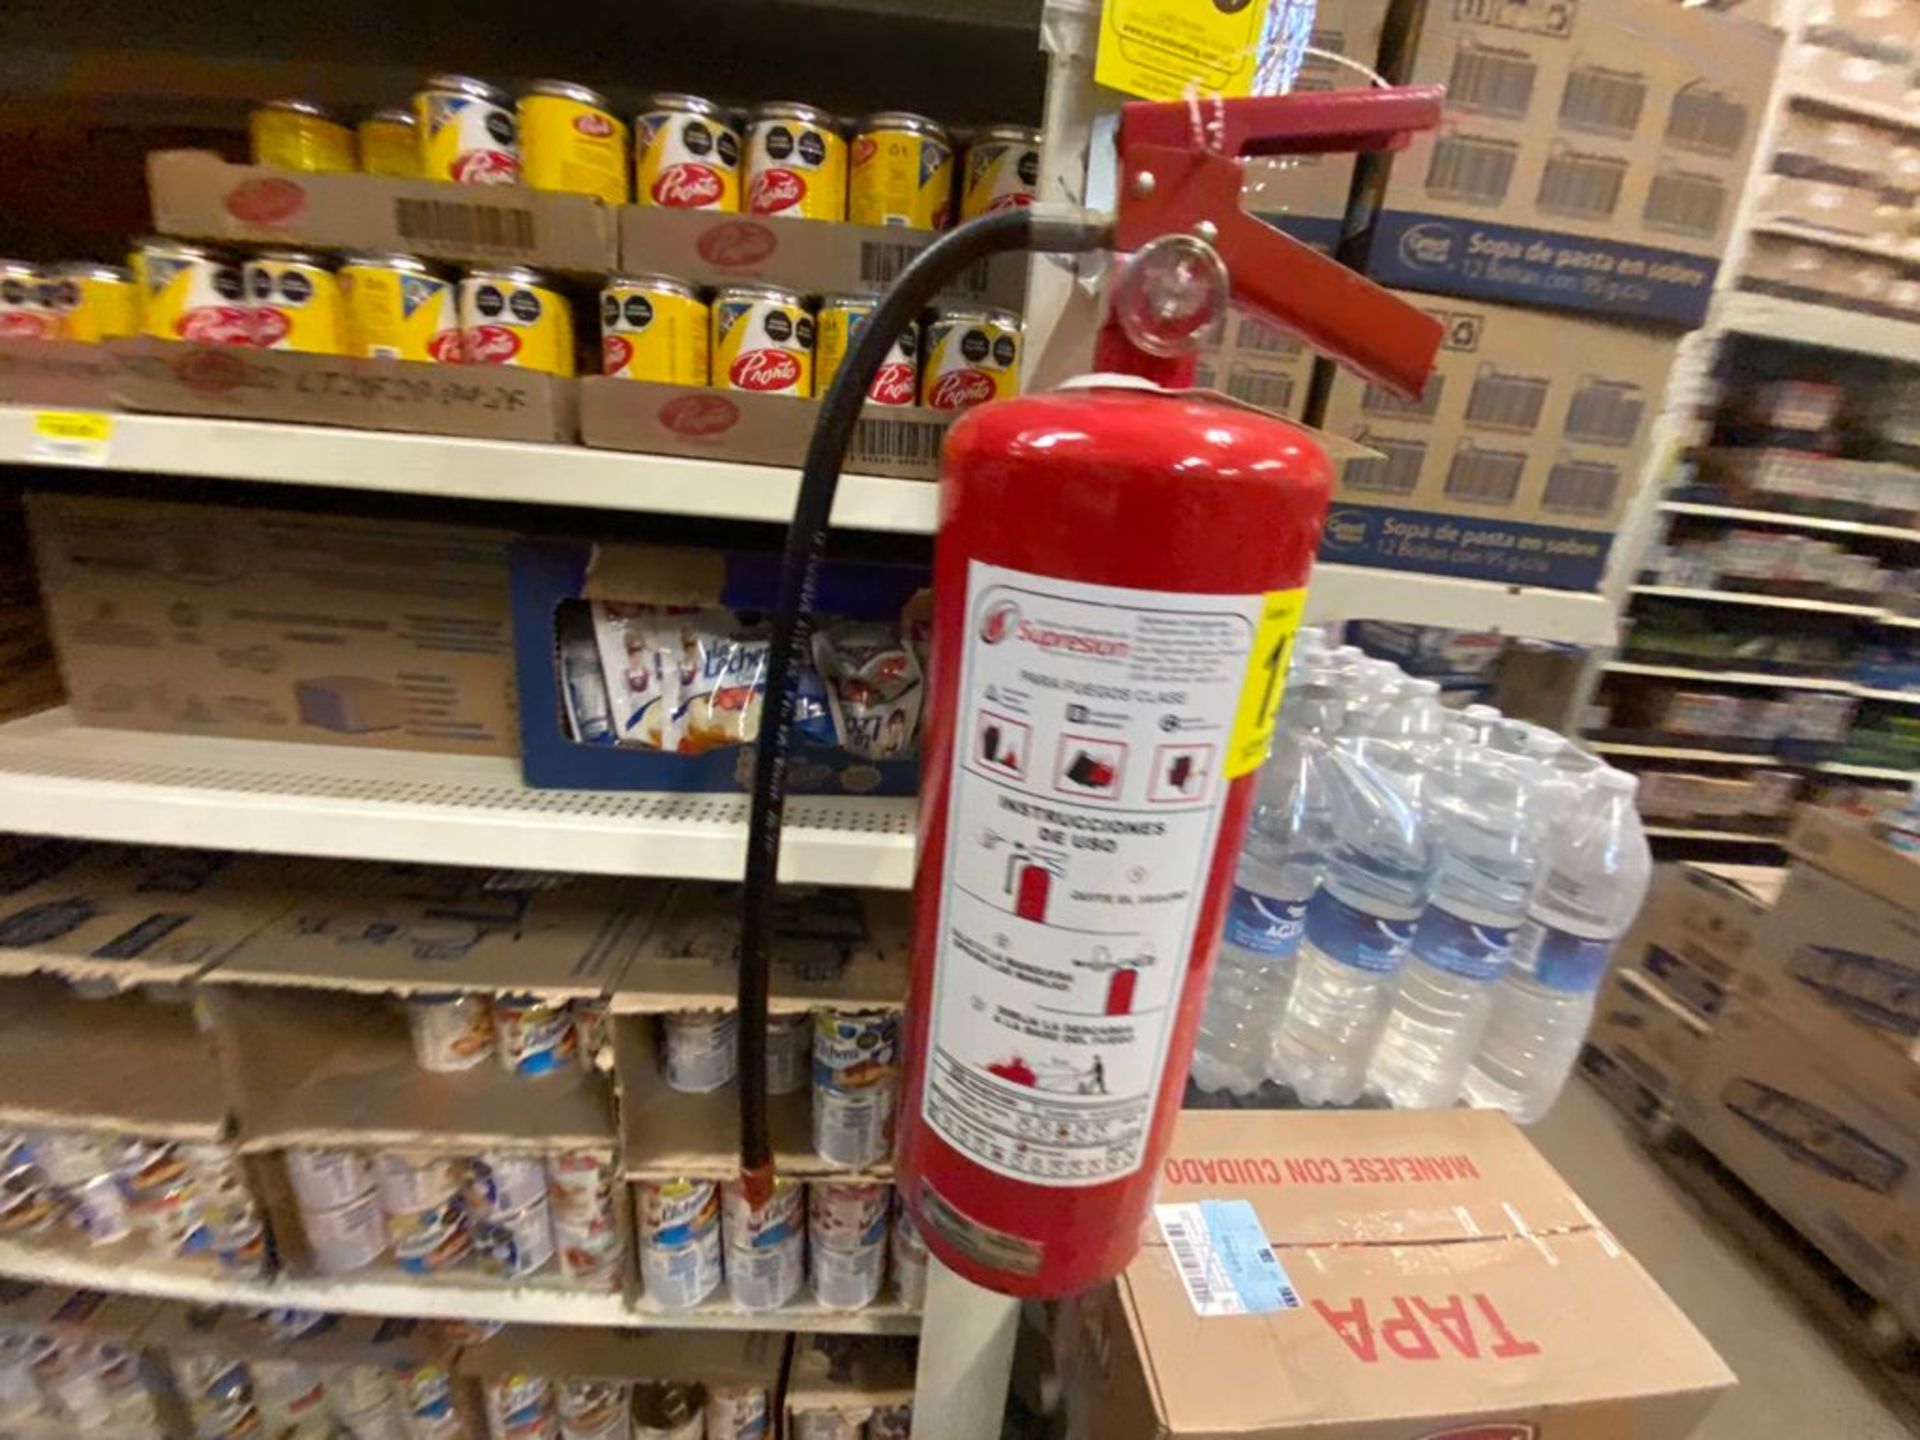 Lote de 21 Extintores distribuidos en toda la tienda - Image 25 of 56